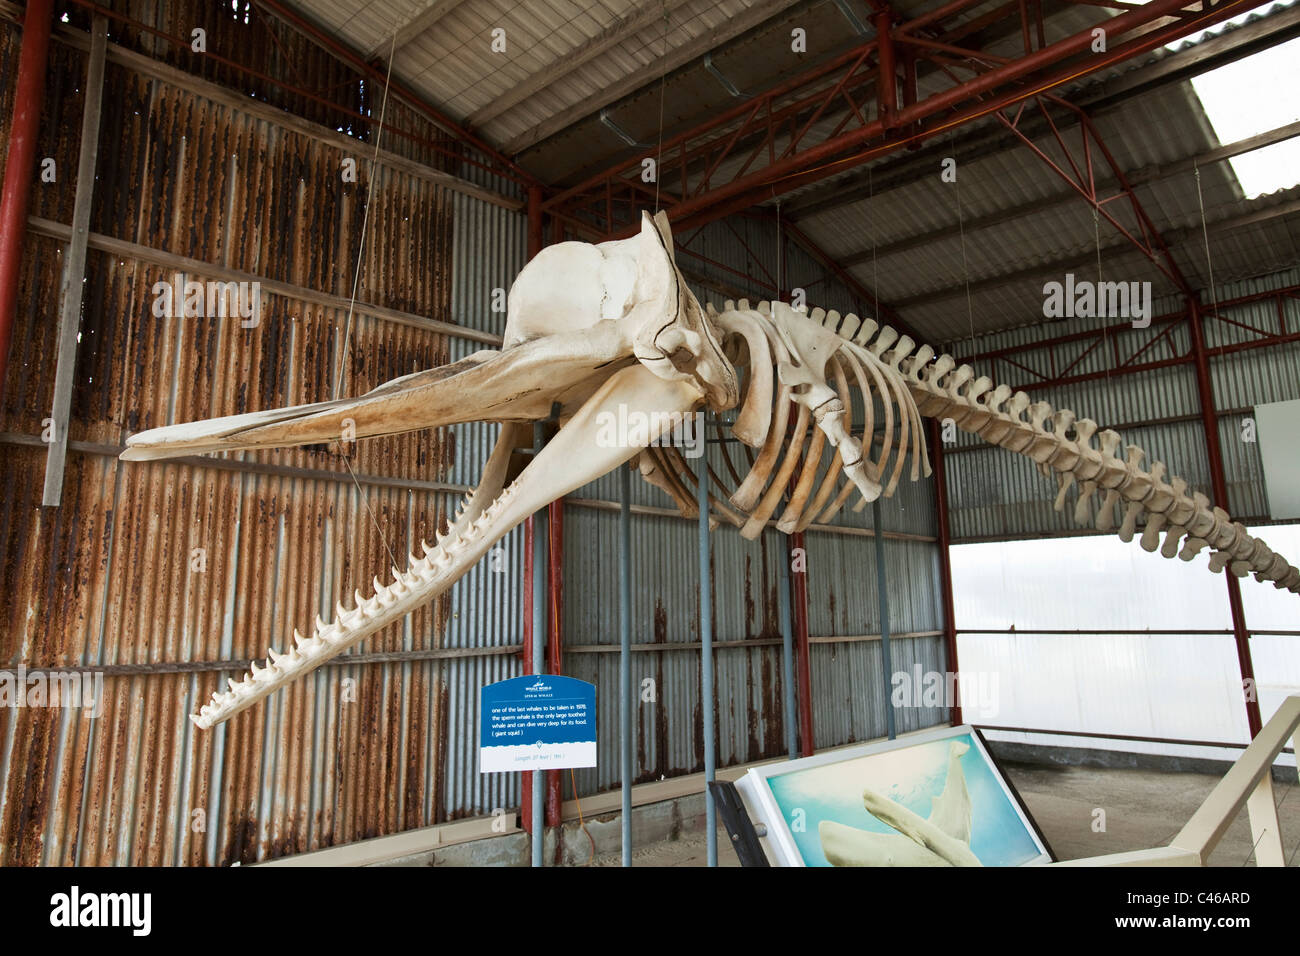 Sperma balena scheletro di balena al museo del mondo. Il francese Bay, Albany, Australia occidentale, Australia Foto Stock